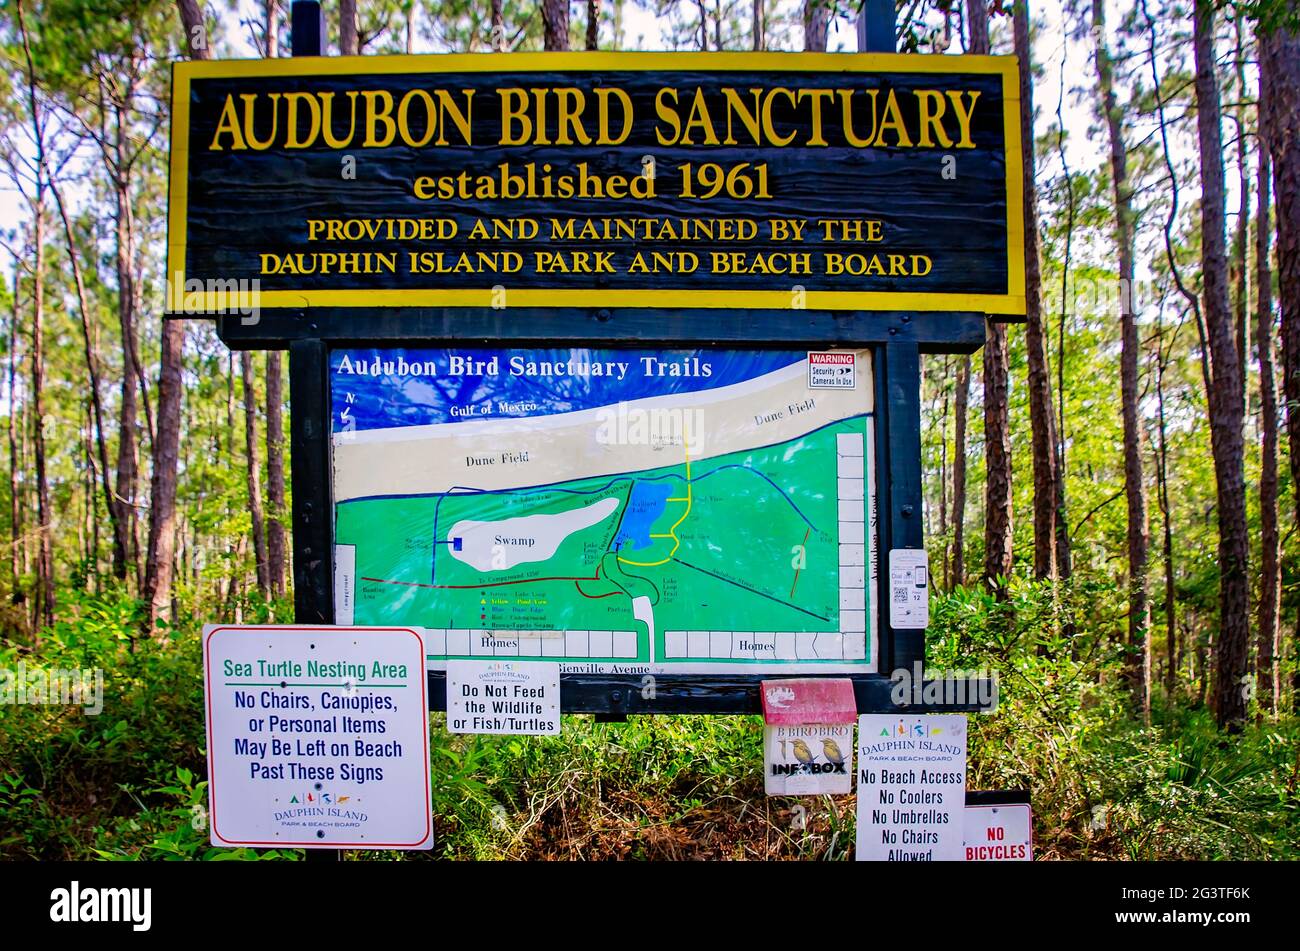 Un cartel está en la entrada del Audubon Bird Sanctuary, 17 de junio de 2021, en Dauphin Island, Alabama. El santuario de aves fue establecido en 1961. Foto de stock